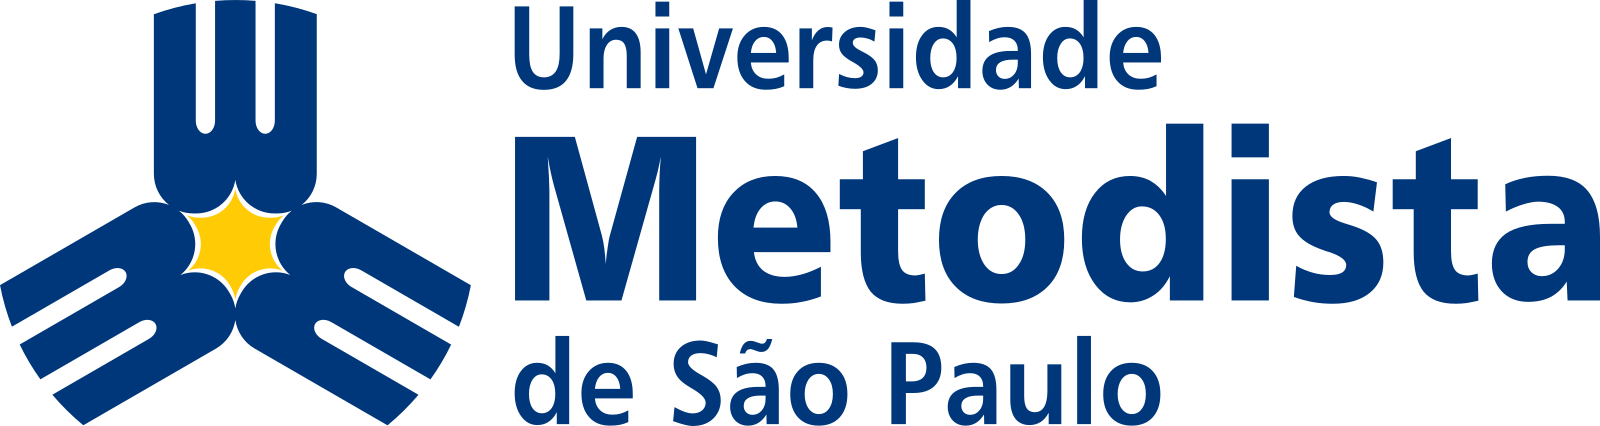 Universidade Metodista de São Paulo UMSP Logo.